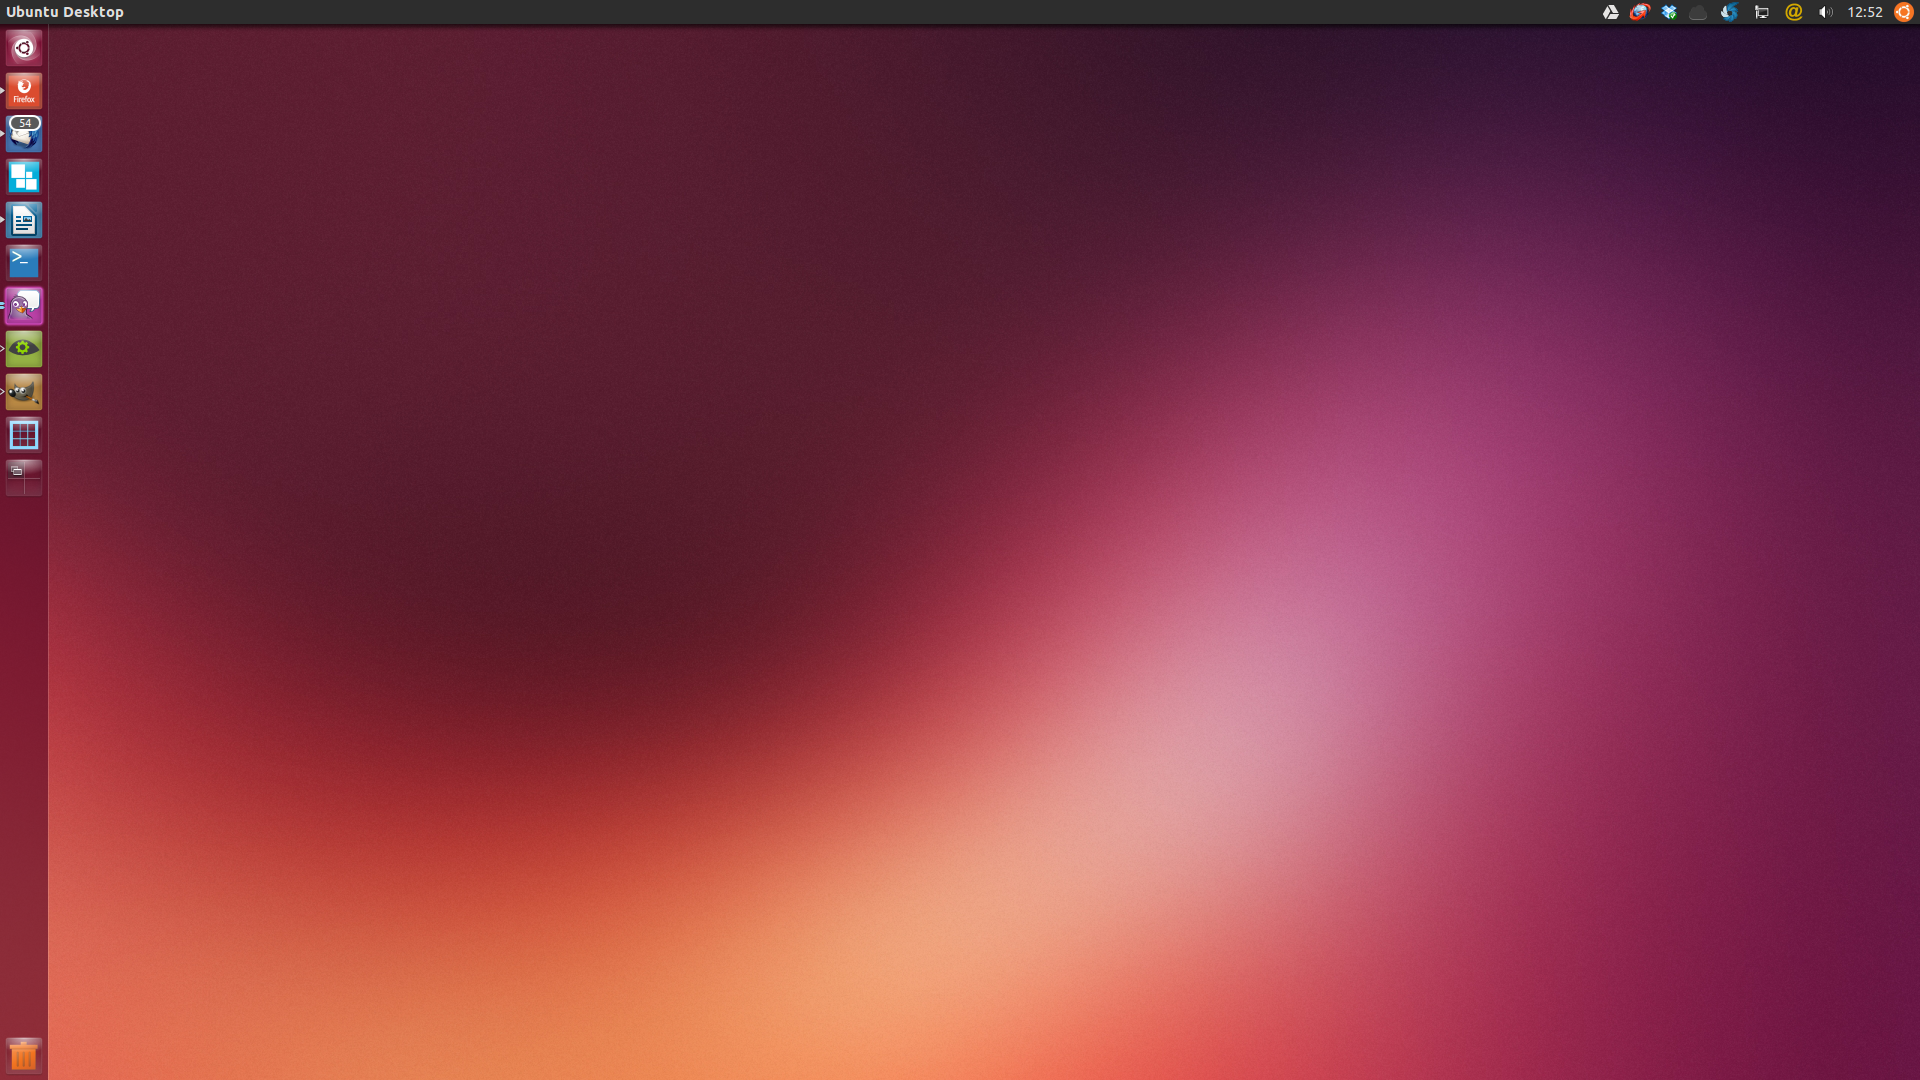 The New Default Wallpaper Finally Lands In Ubuntu Saucy